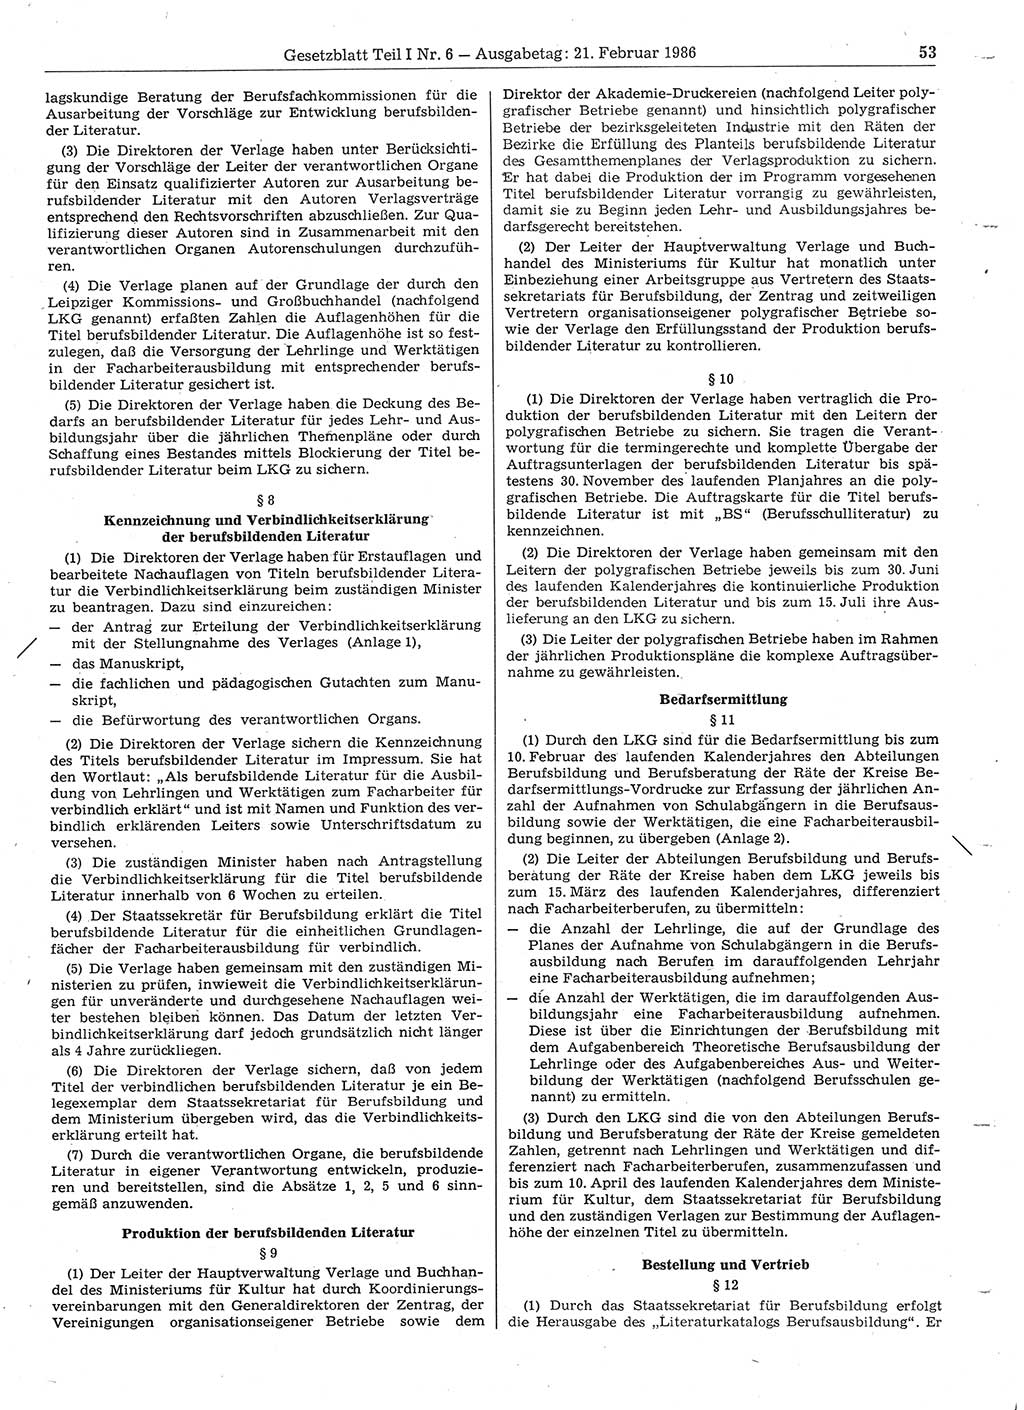 Gesetzblatt (GBl.) der Deutschen Demokratischen Republik (DDR) Teil Ⅰ 1986, Seite 53 (GBl. DDR Ⅰ 1986, S. 53)